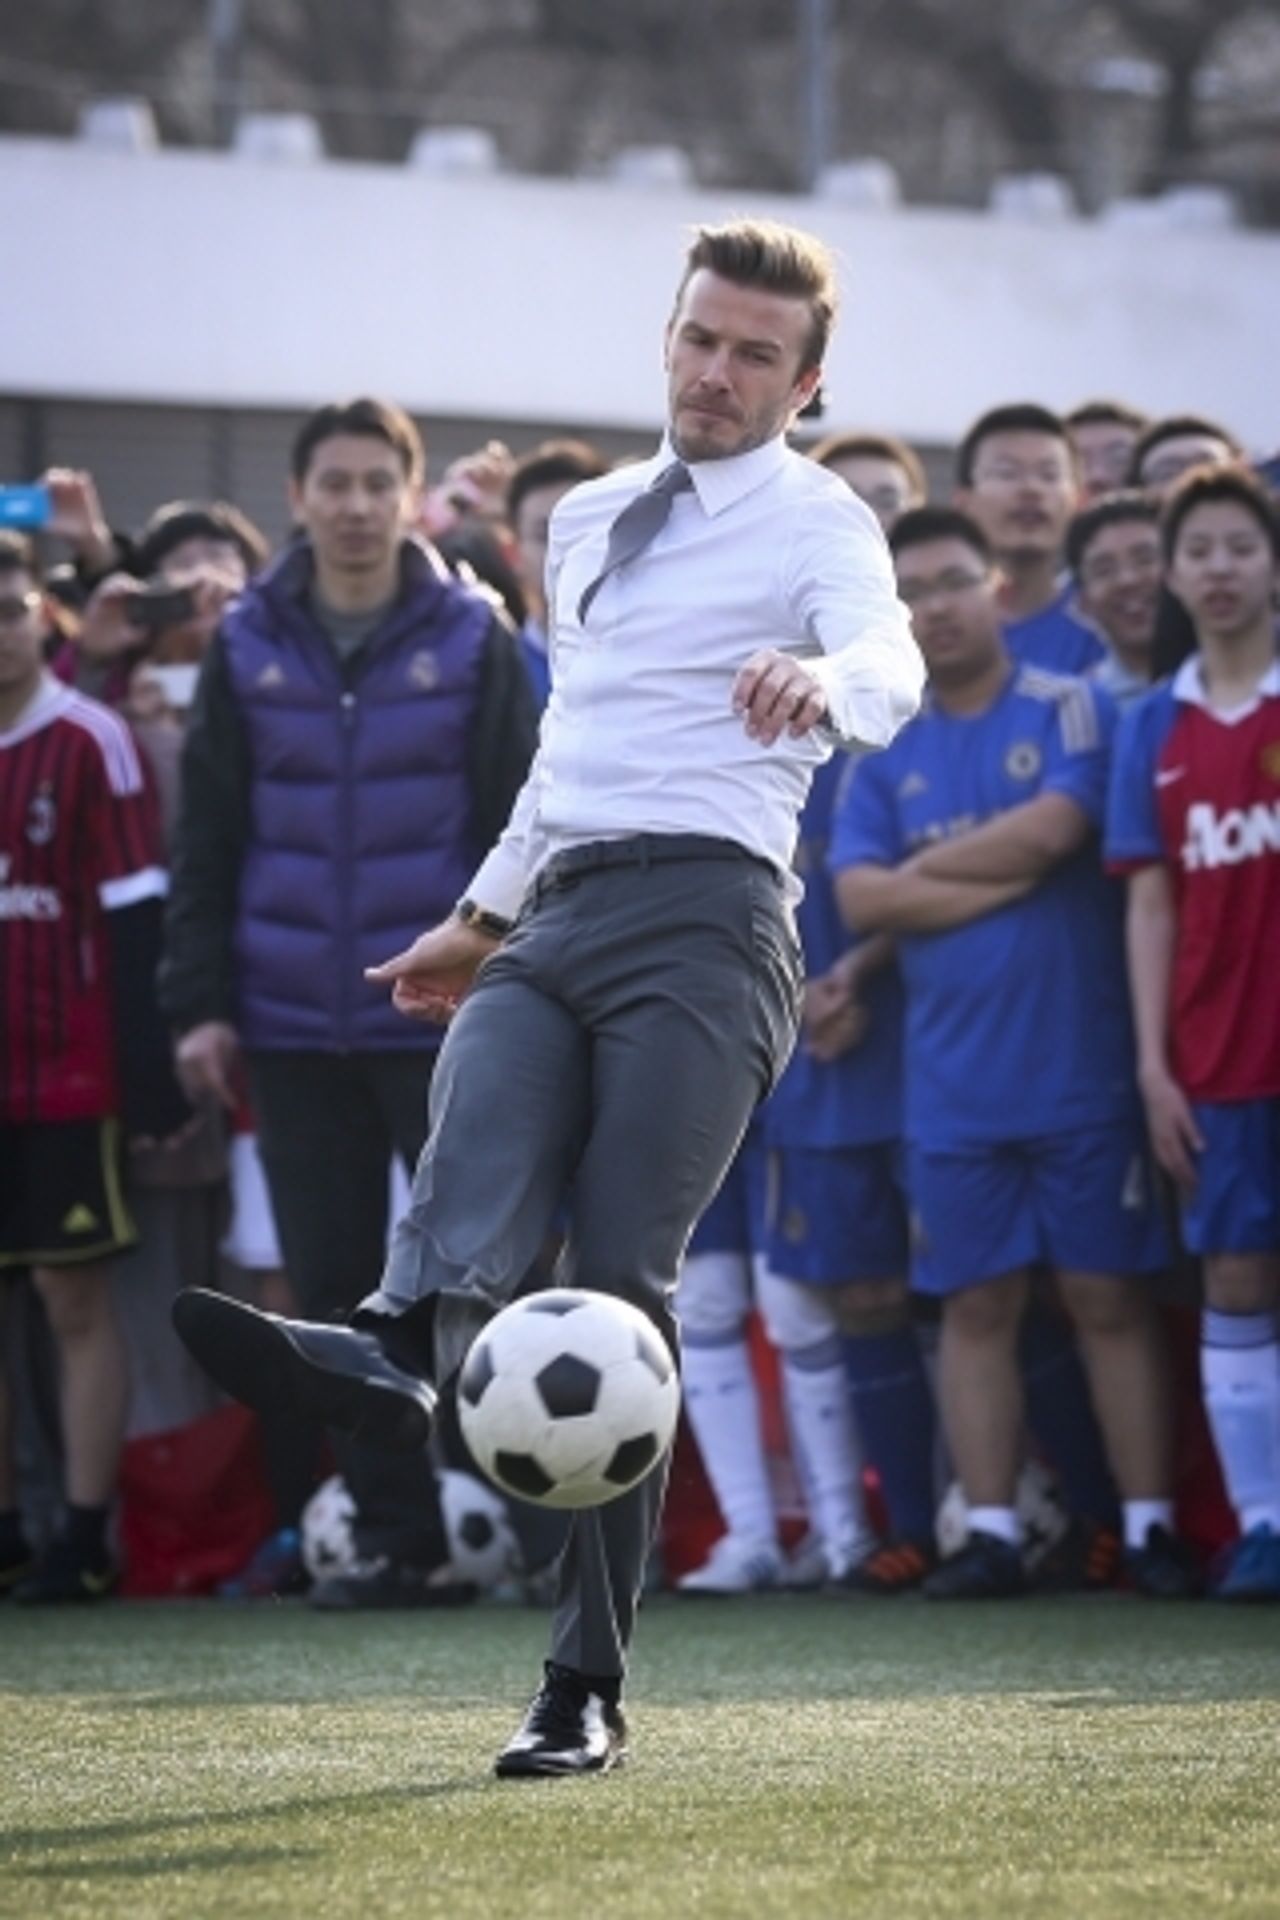 David Beckham v Číně - 5 - OBRAZEM: David Beckham v Číně (3/7)